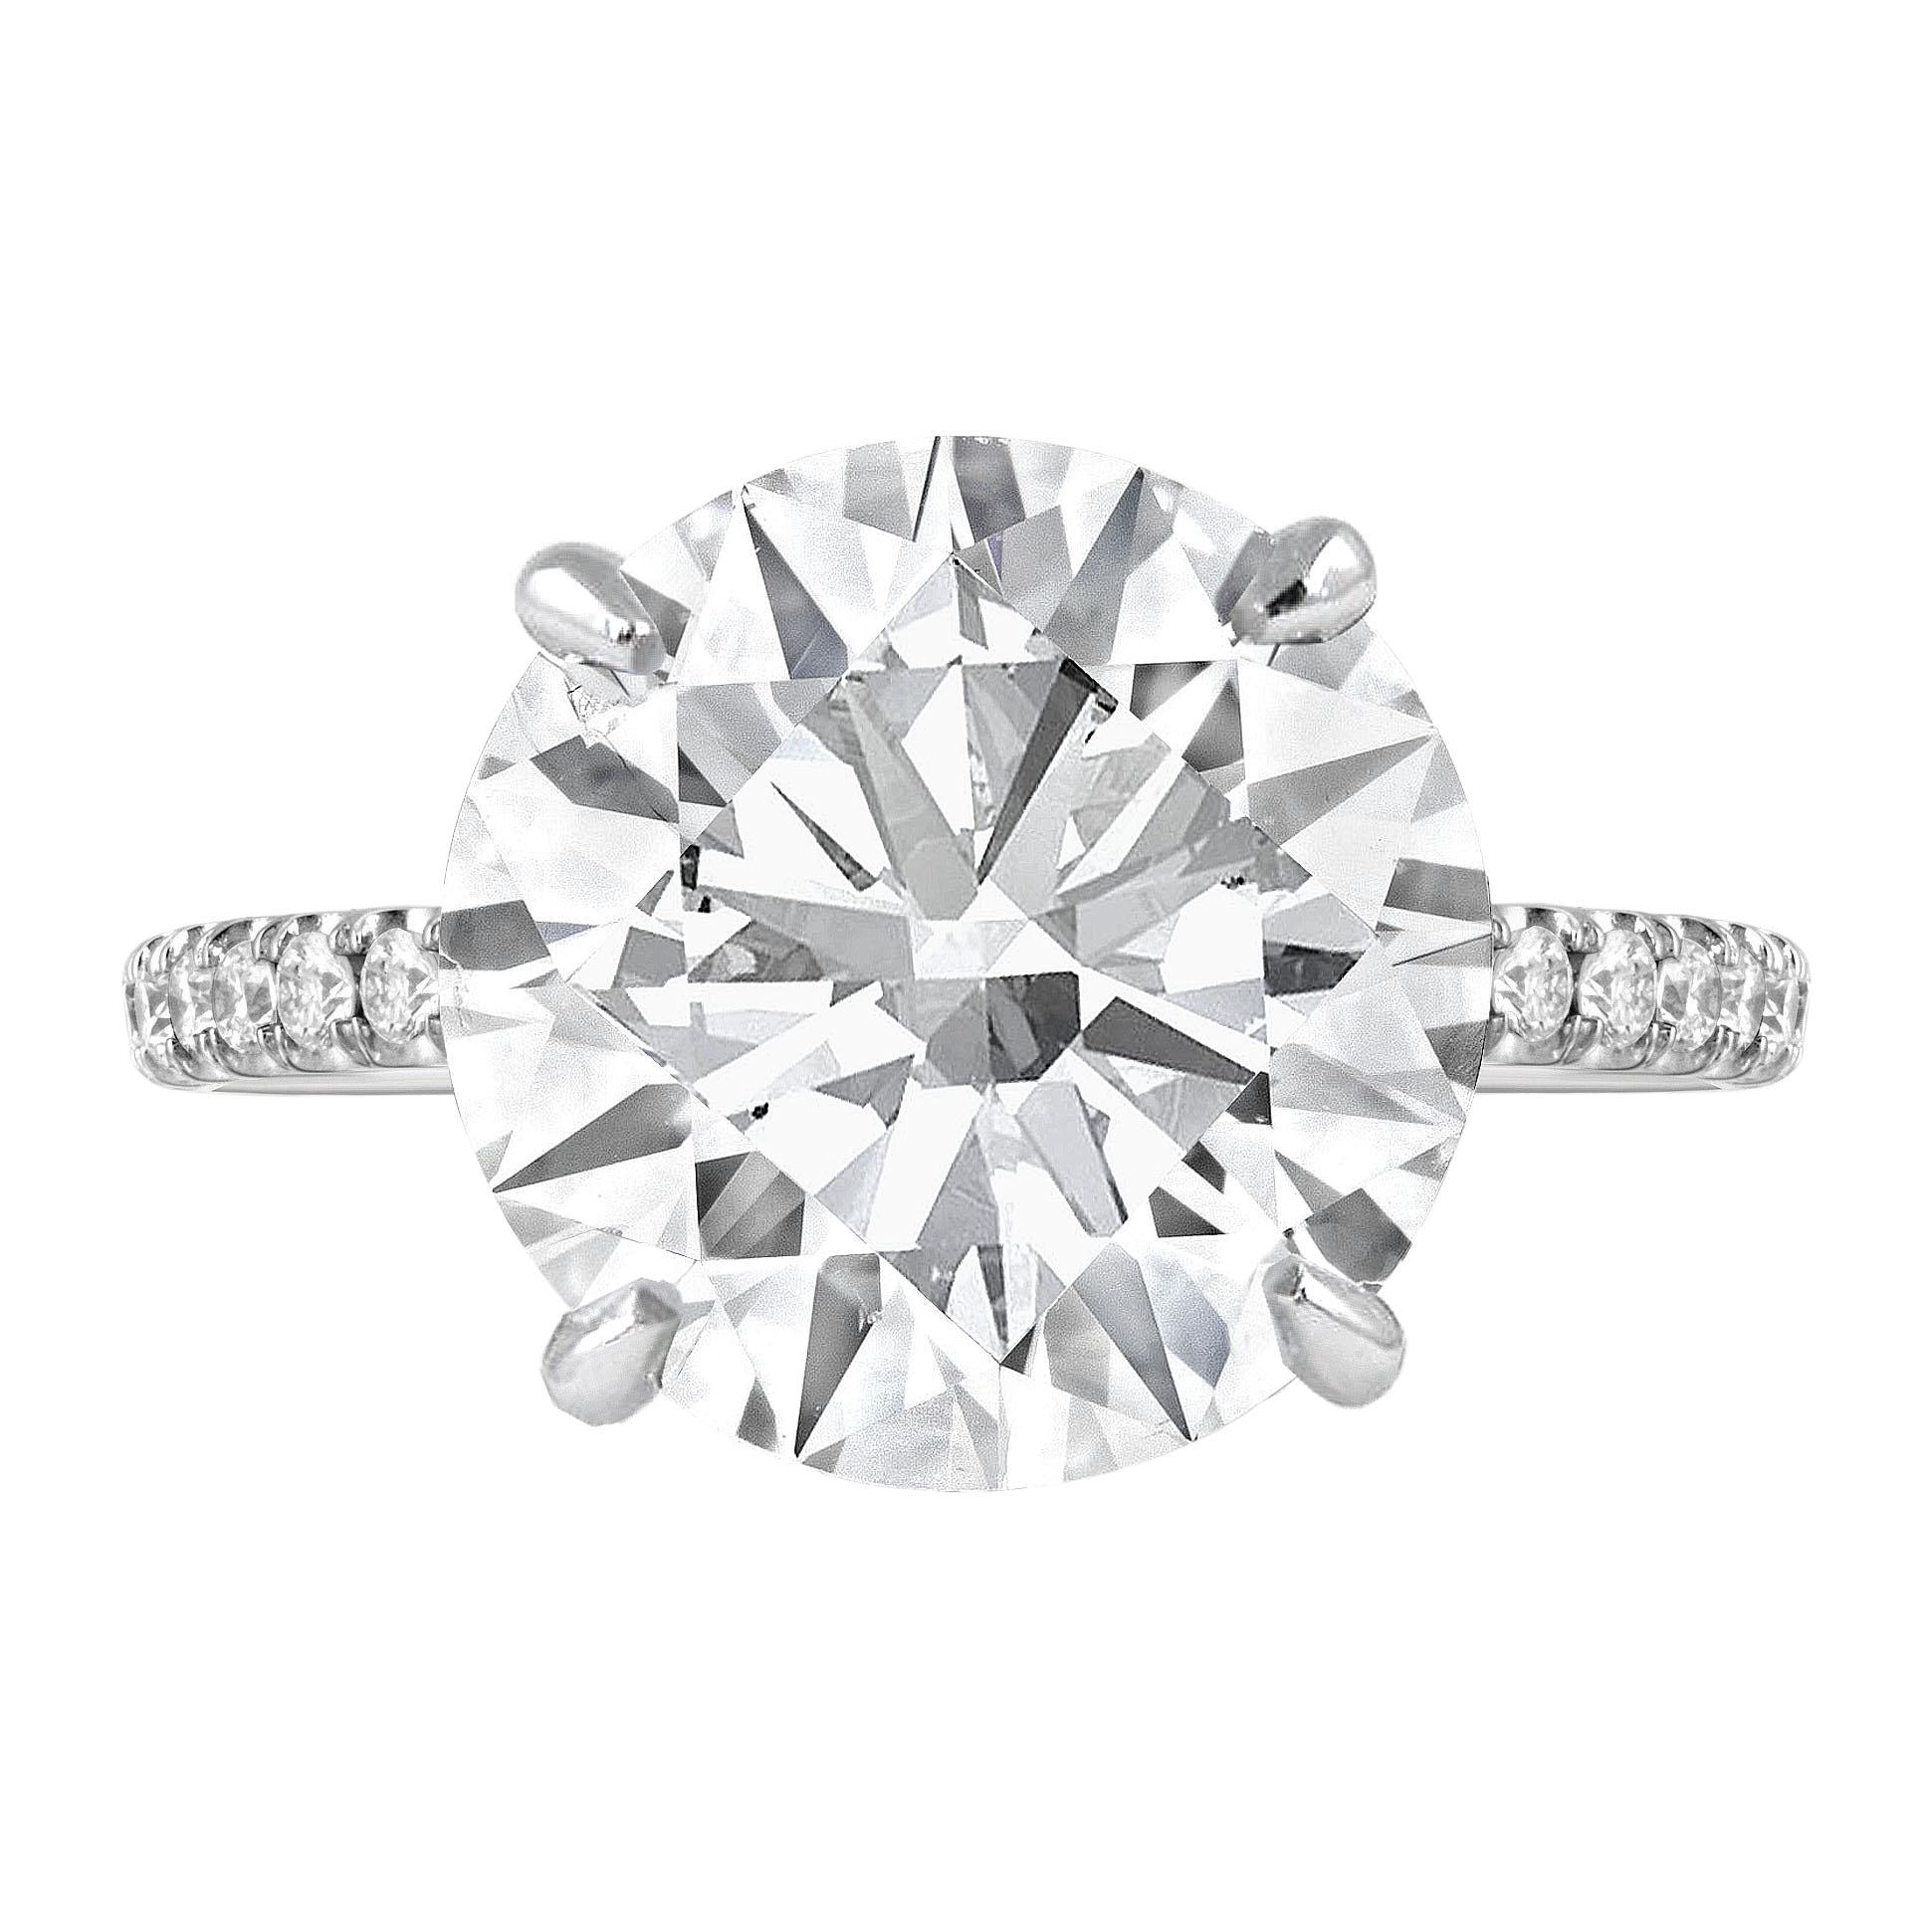 Admirez l'élégance exquise de cette bague ornée d'un éblouissant diamant rond de 5 carats certifié par la GIA, d'une couleur D exceptionnelle et d'une pureté irréprochable. Certifié par le prestigieux Gemological Institute of America (GIA), ce